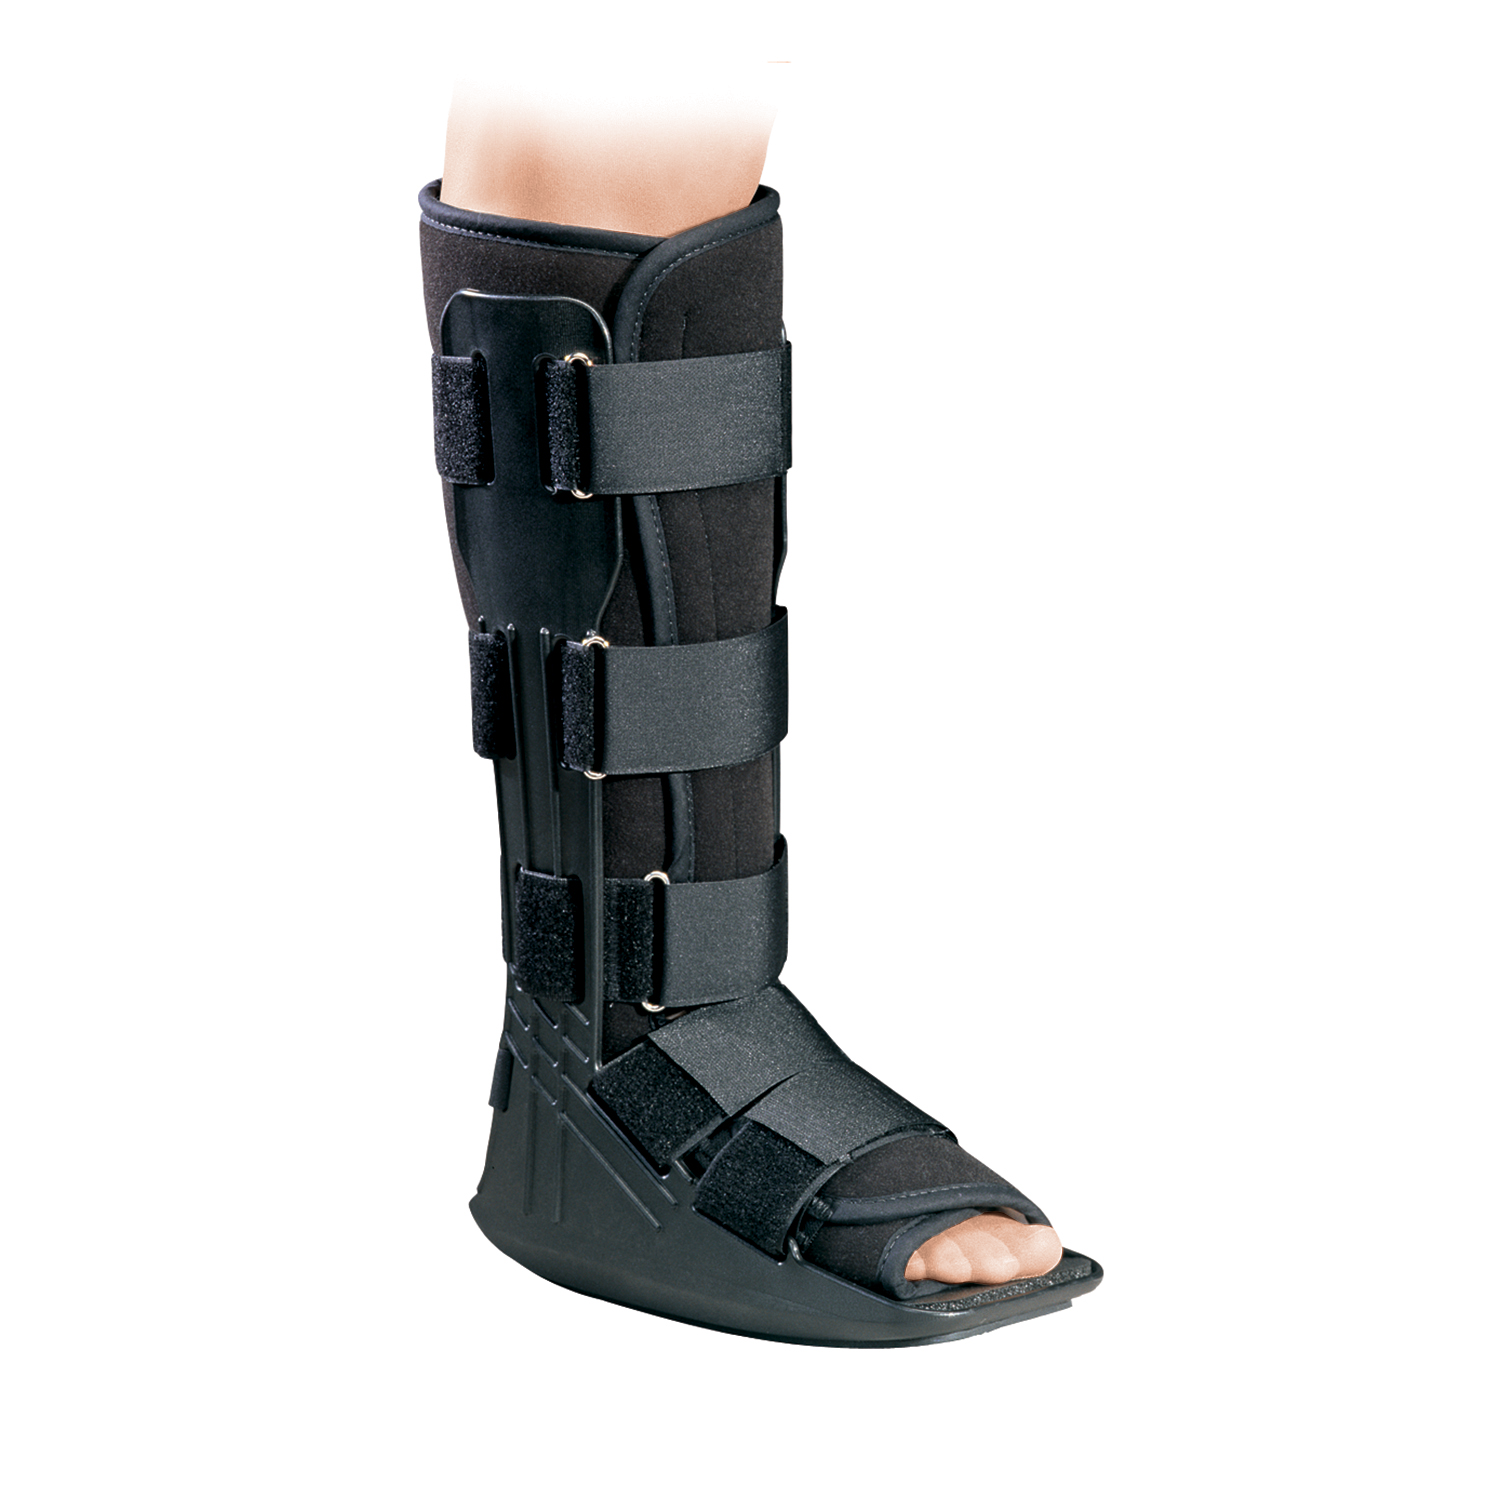 Produktbild PROCARE® Prostep™ Walker, Unterschenkel-Fuß-Orthese zur Immobilisierung in vorgegebener
Position